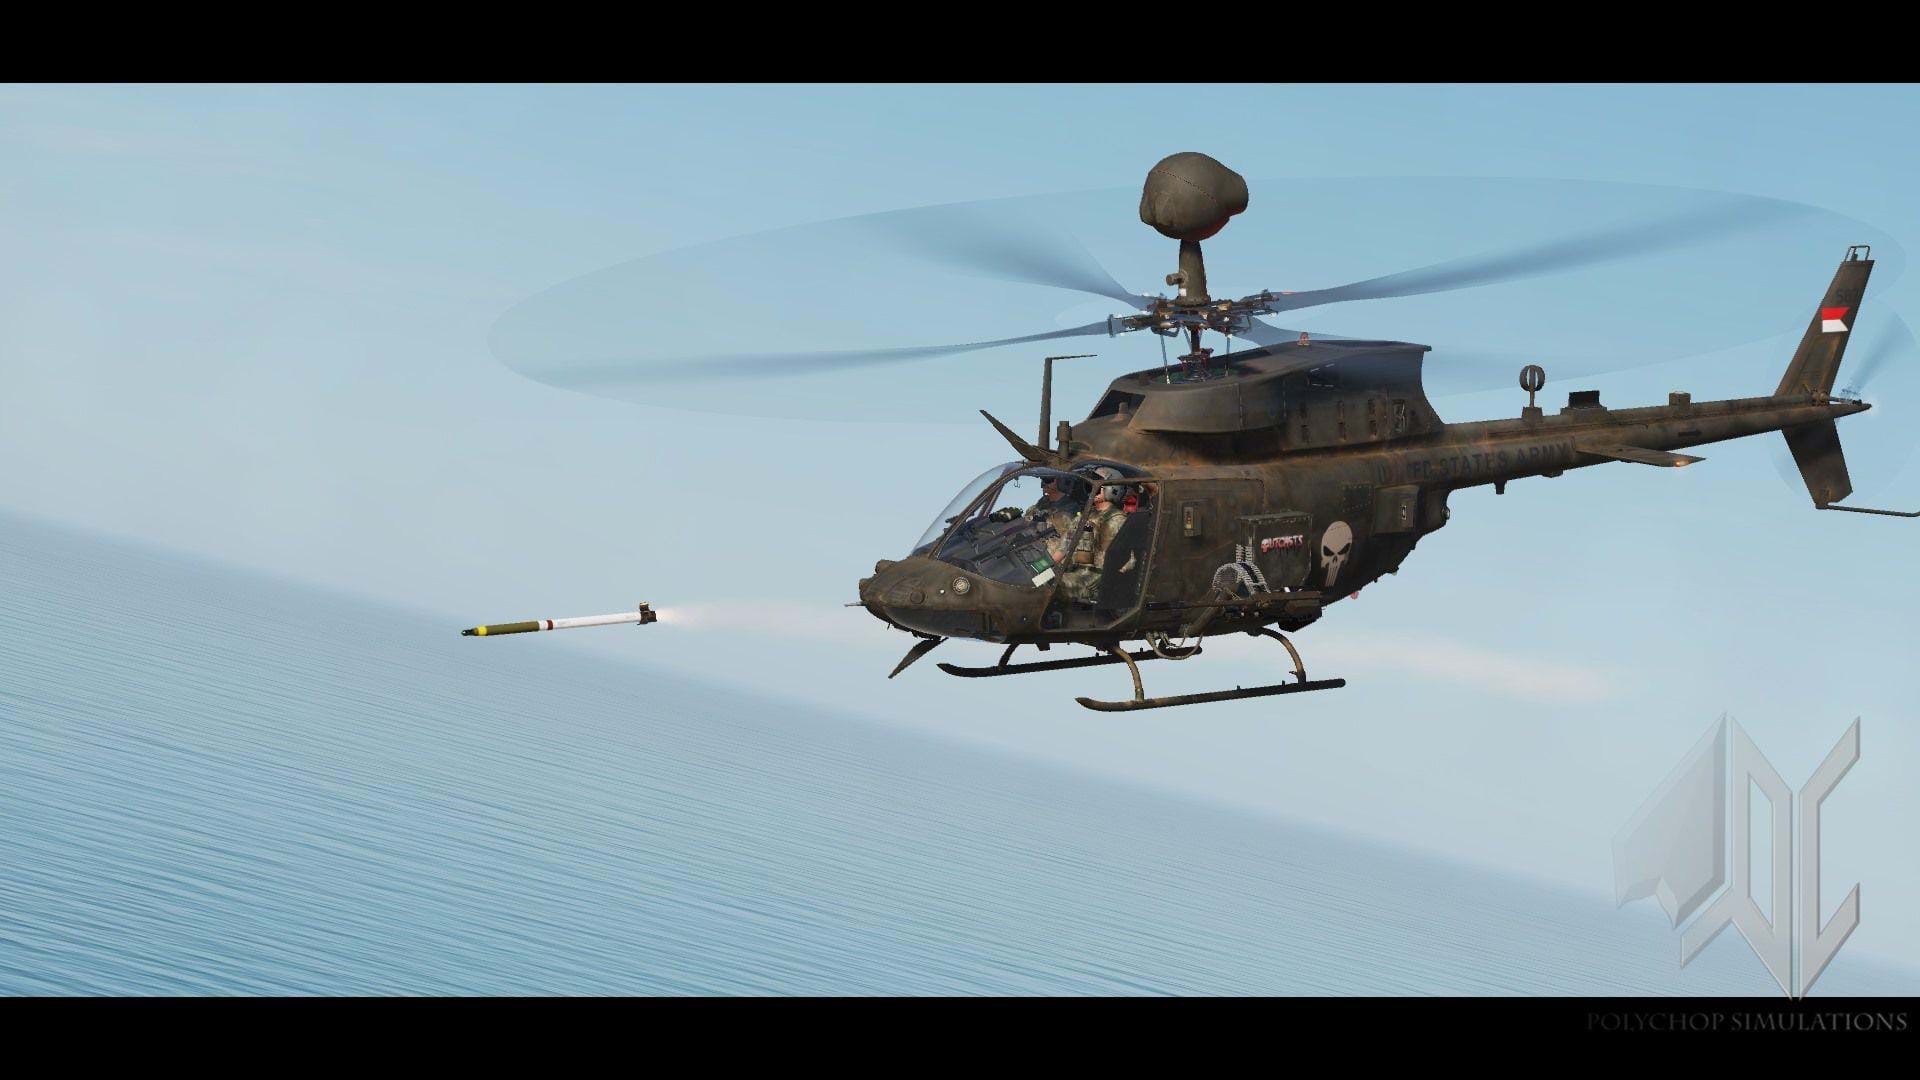 Polychop OH-58 Kiowa for DCS